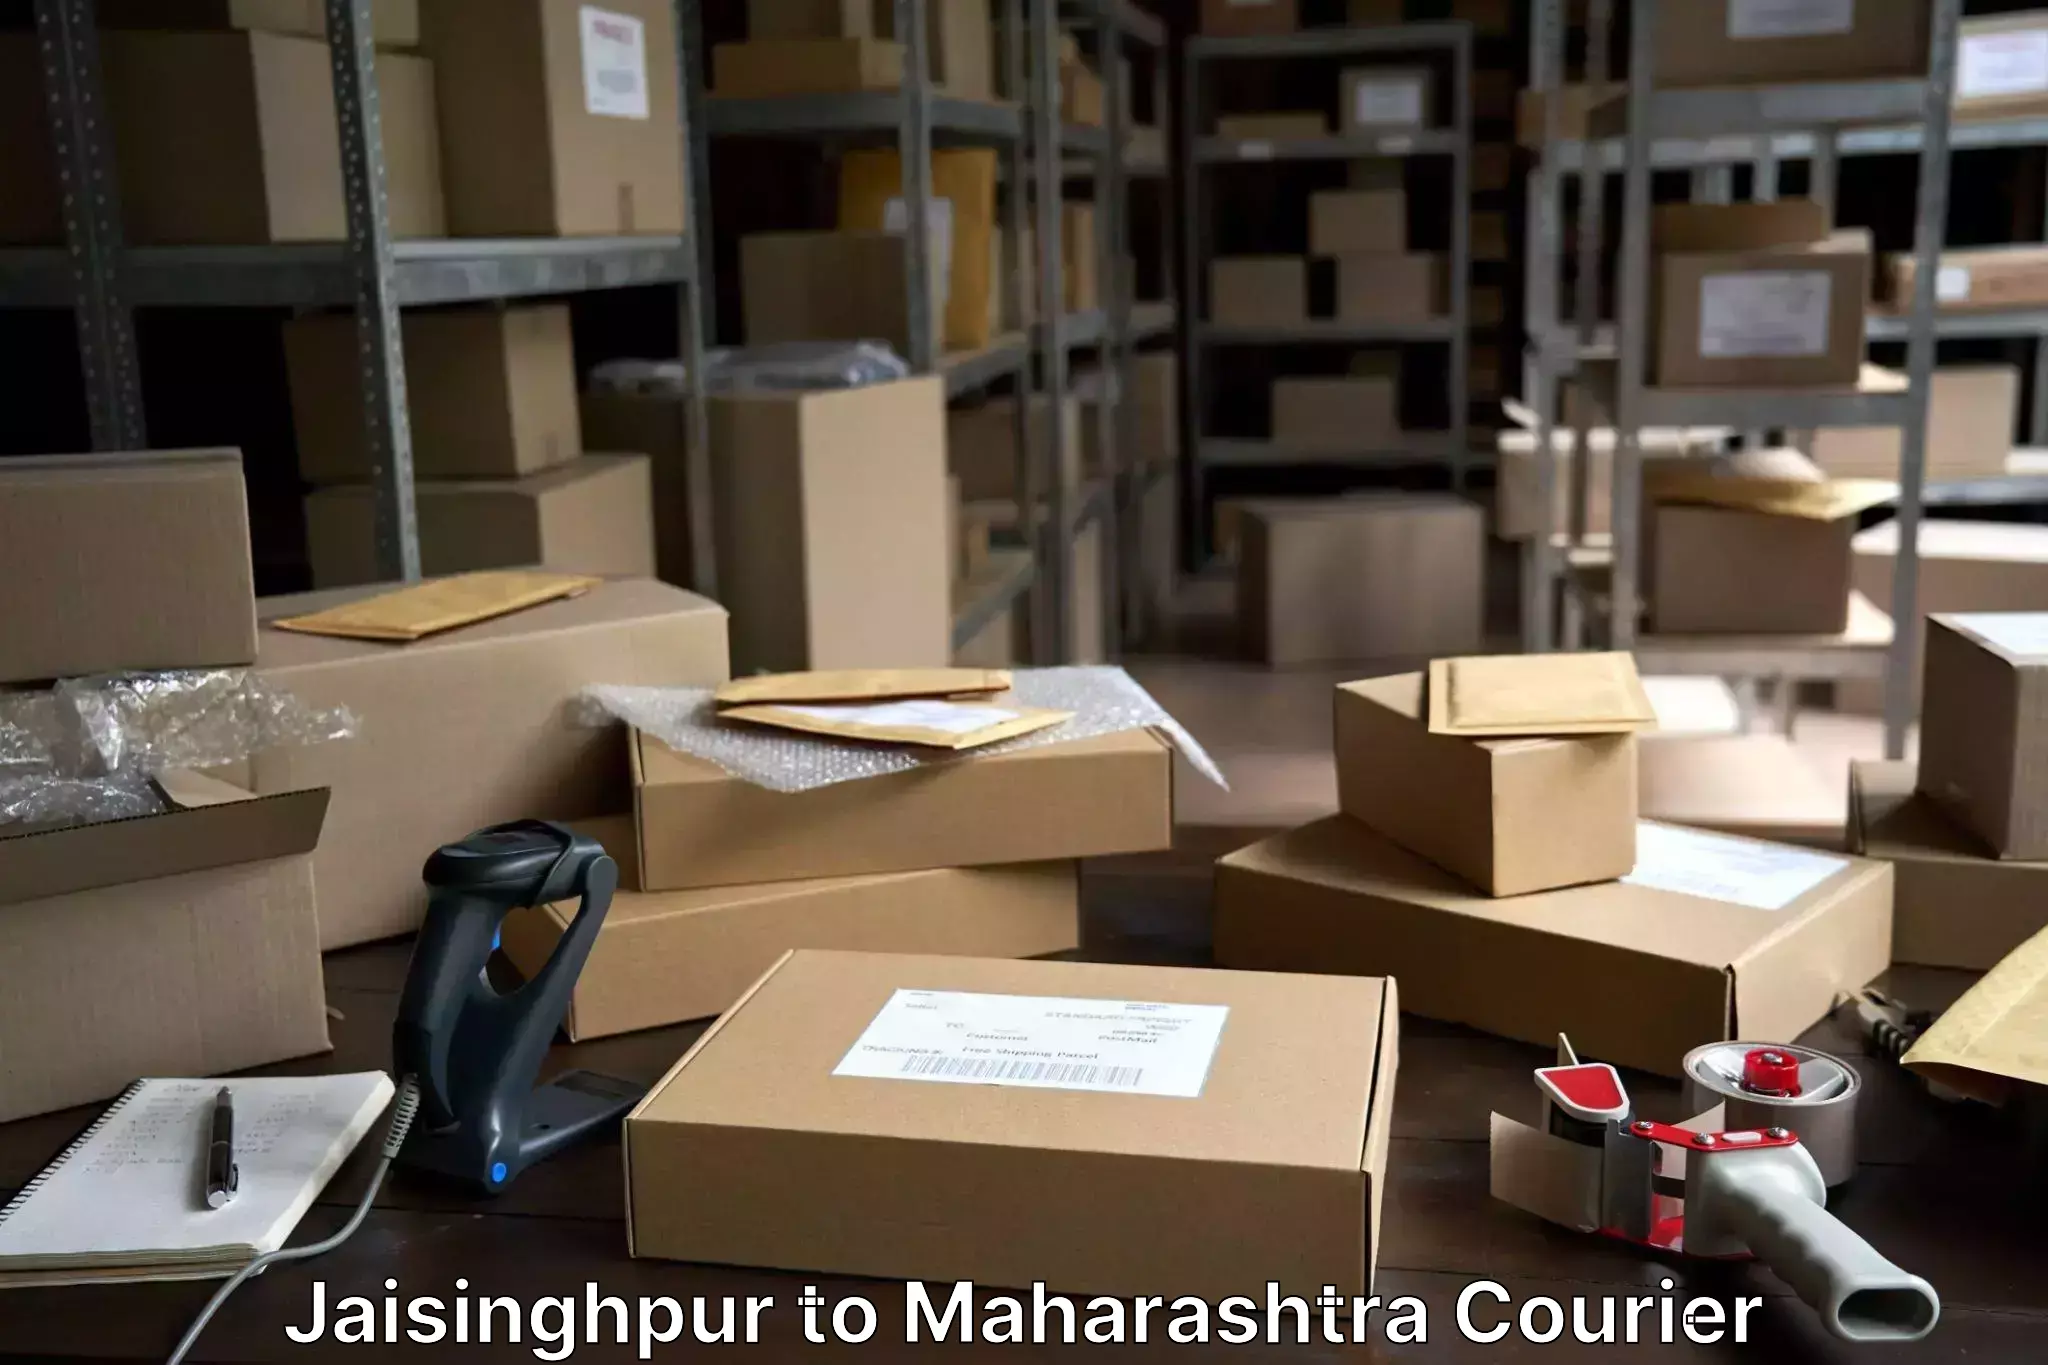 Baggage shipping experience Jaisinghpur to Maharashtra